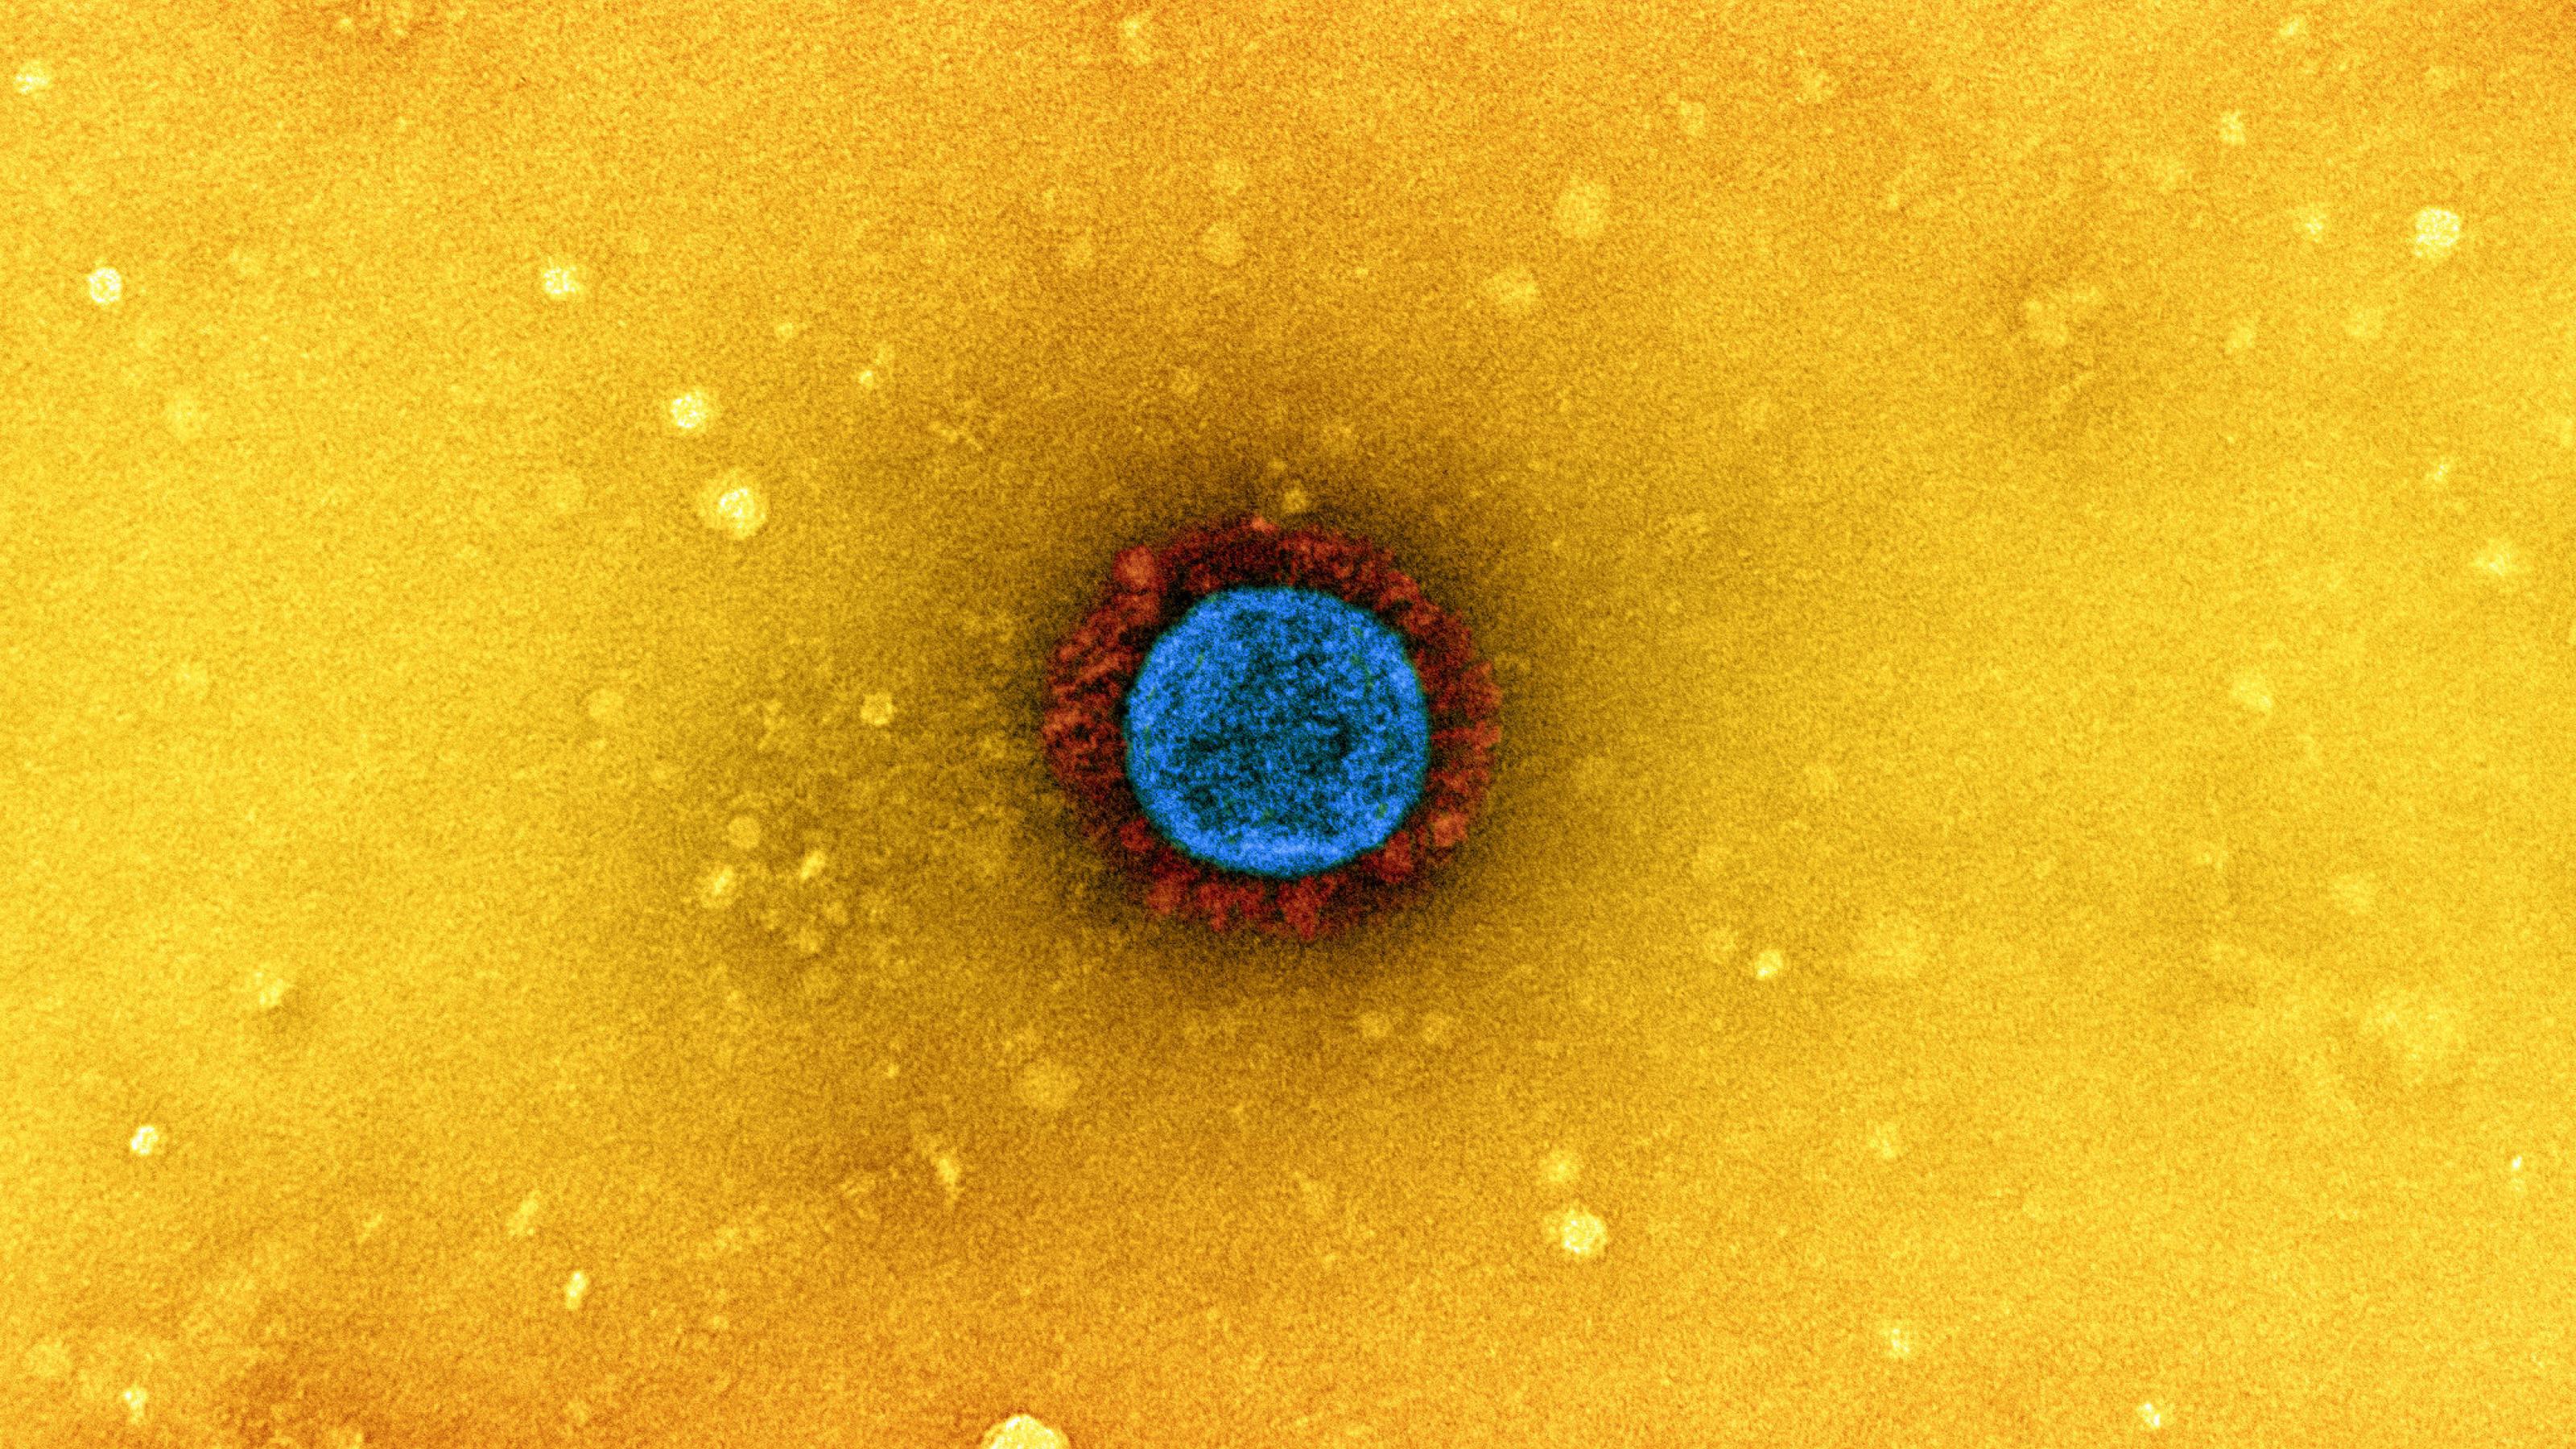 Elektronenmikroskopische Aufnahme von Sars-CoV-2. Das Virus ist blau angefärbt, die Spike-Proteine rot.